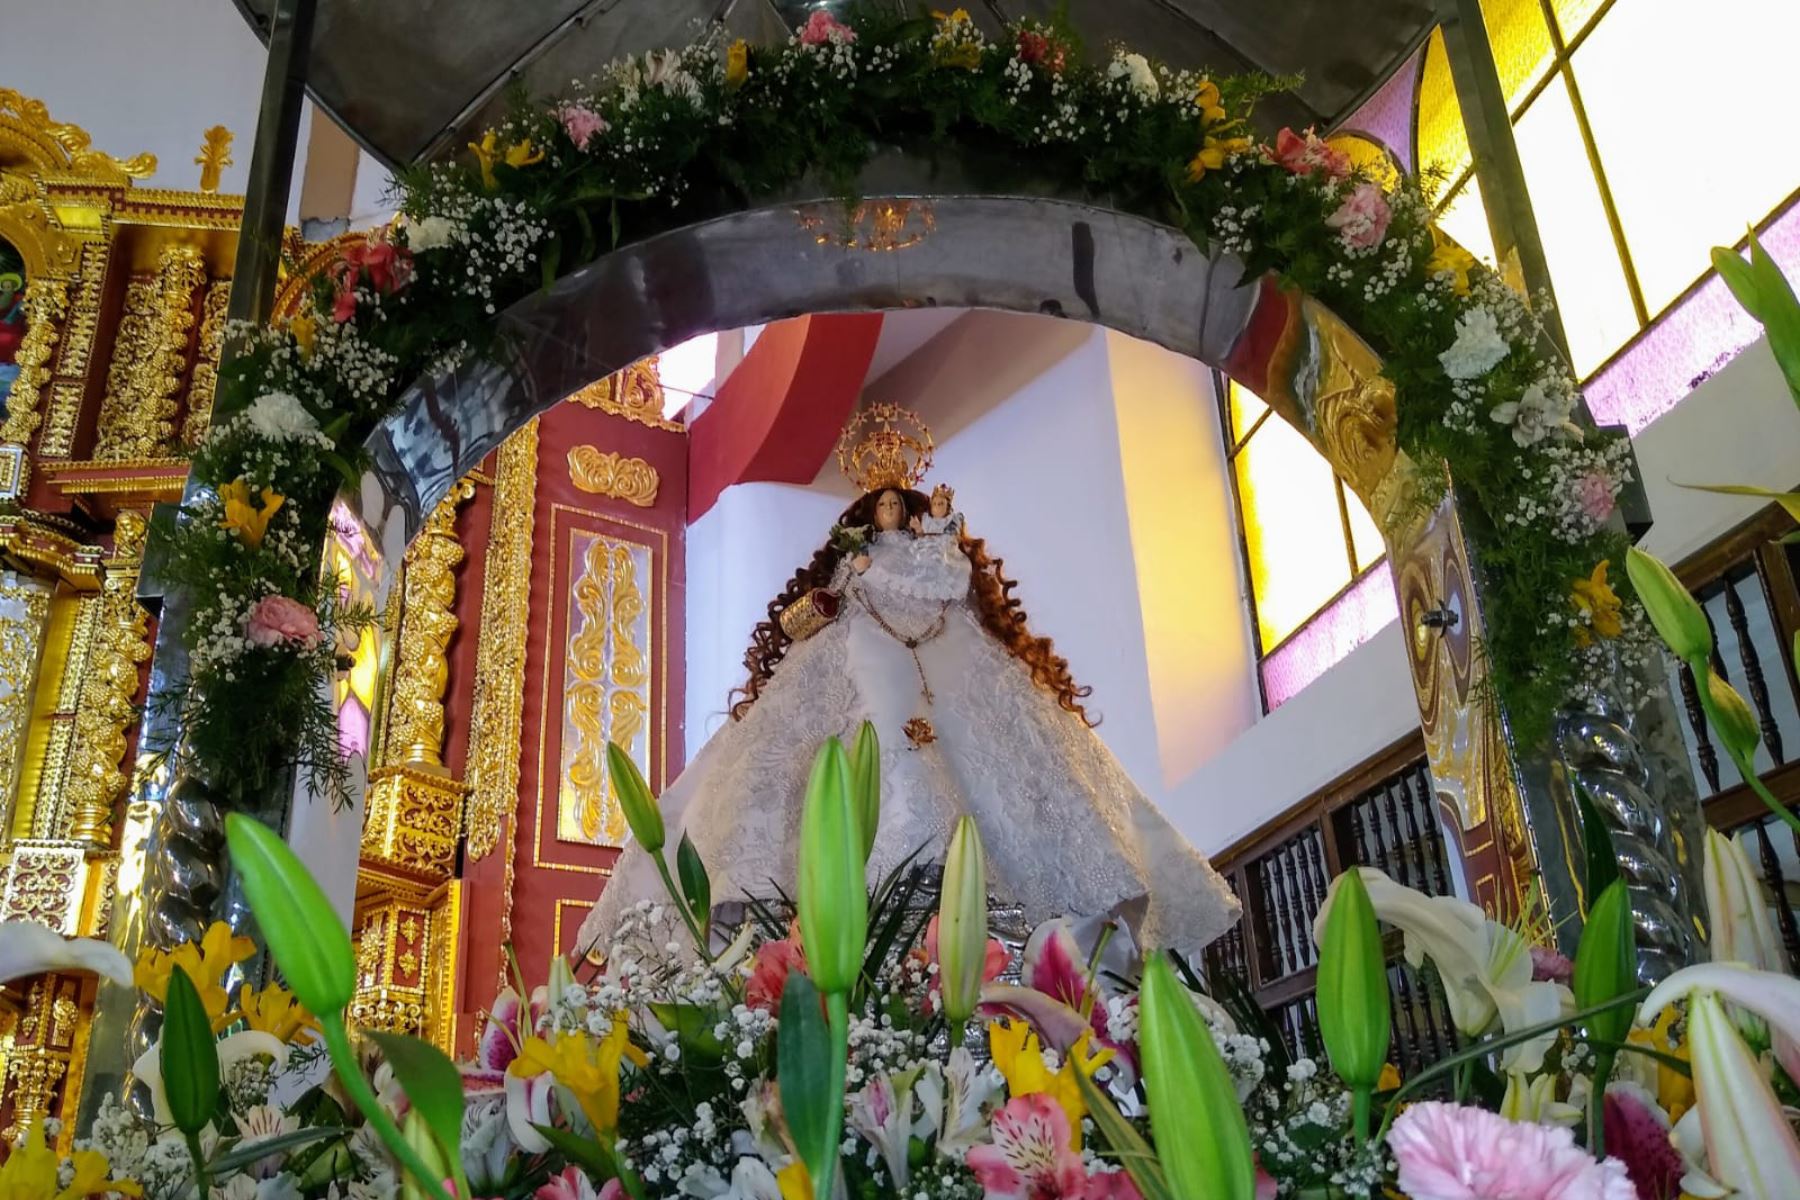 Devotos llegaron al santuario de la Virgen de Cocharcas en Sapallanga, región Junín, con motivo de su festividad. Foto: Cortesía Pedro Tinoco